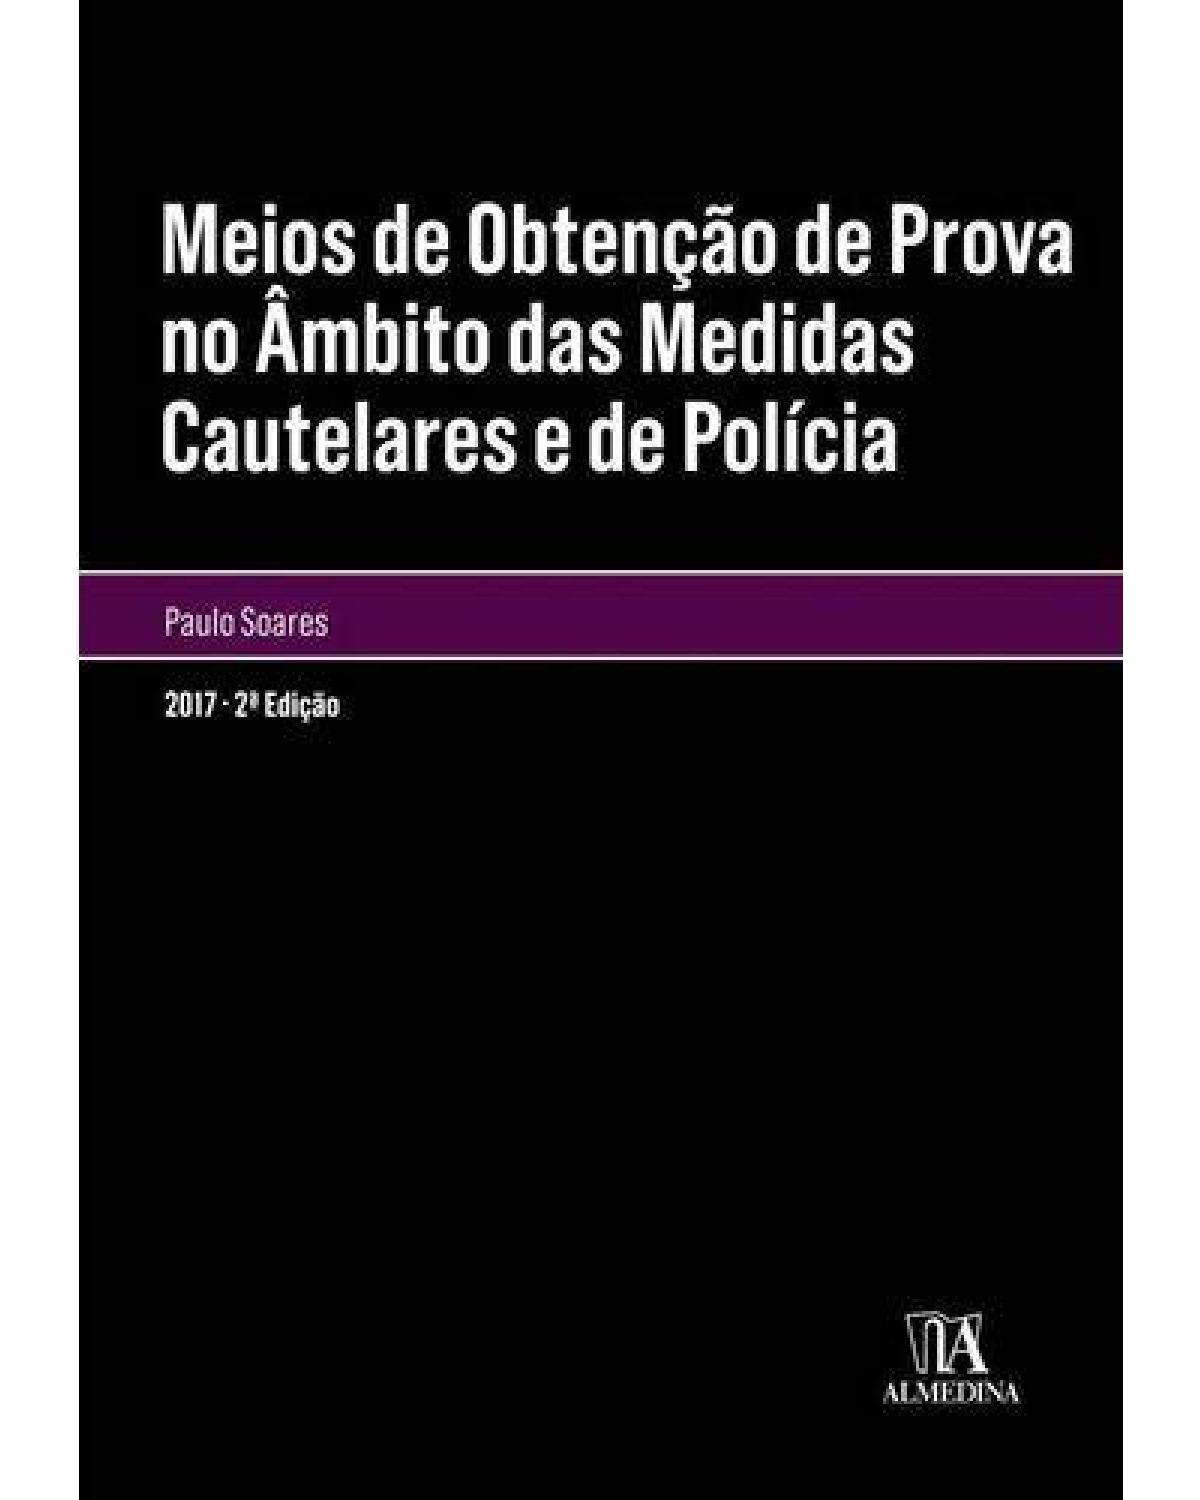 Meios de obtenção de prova no âmbito das medidas cautelares e de polícia - 2ª Edição | 2017